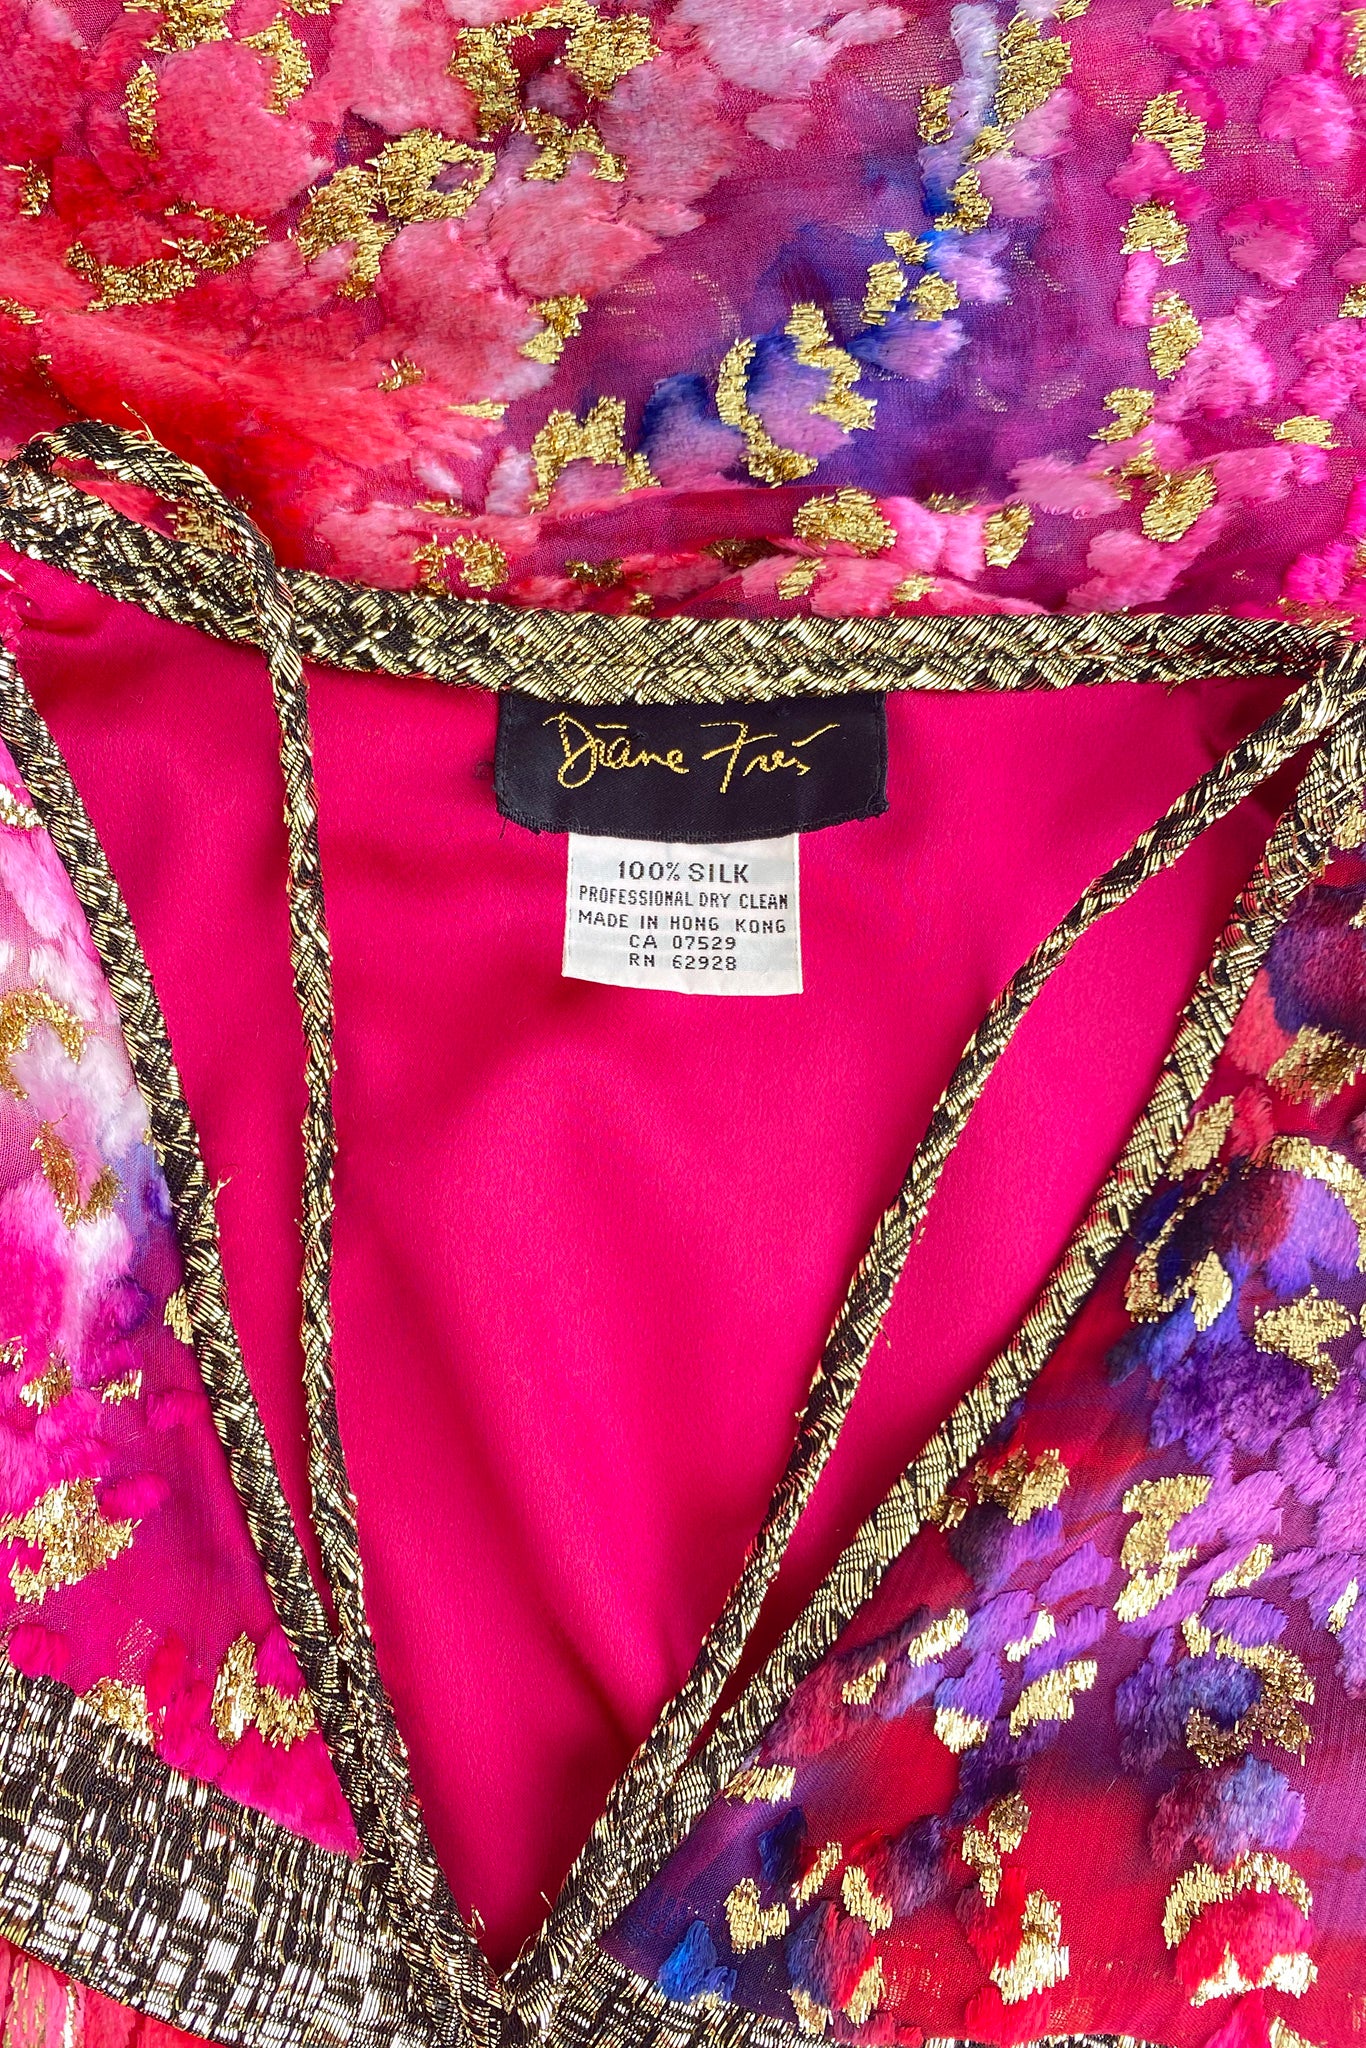 Vintage Diane Freis Velvet Lamé Blouson Dress Label neckline detail at Recess Los Angeles